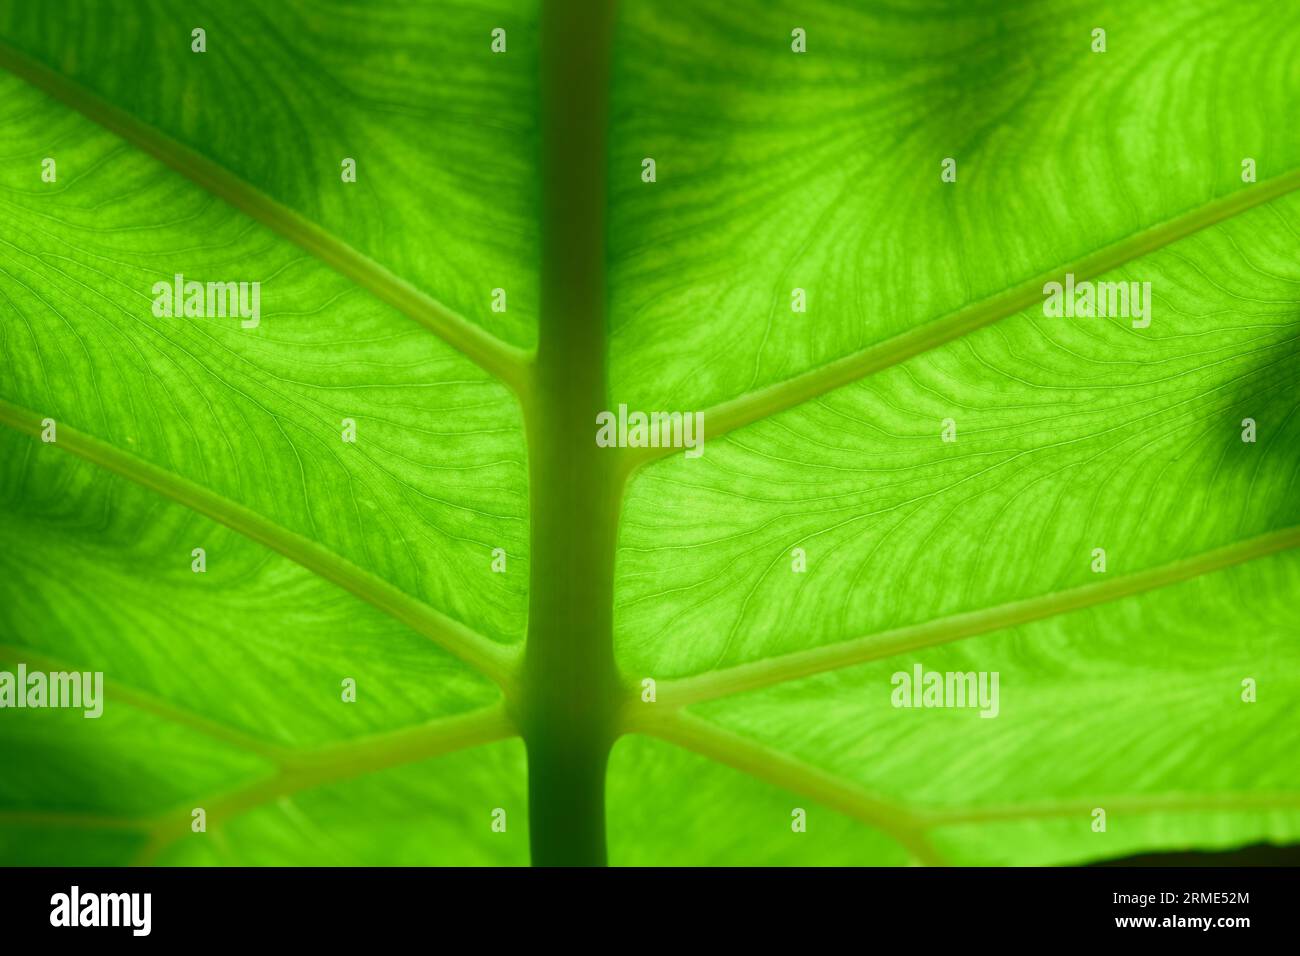 Full frame shot of green leaves background Stock Photo